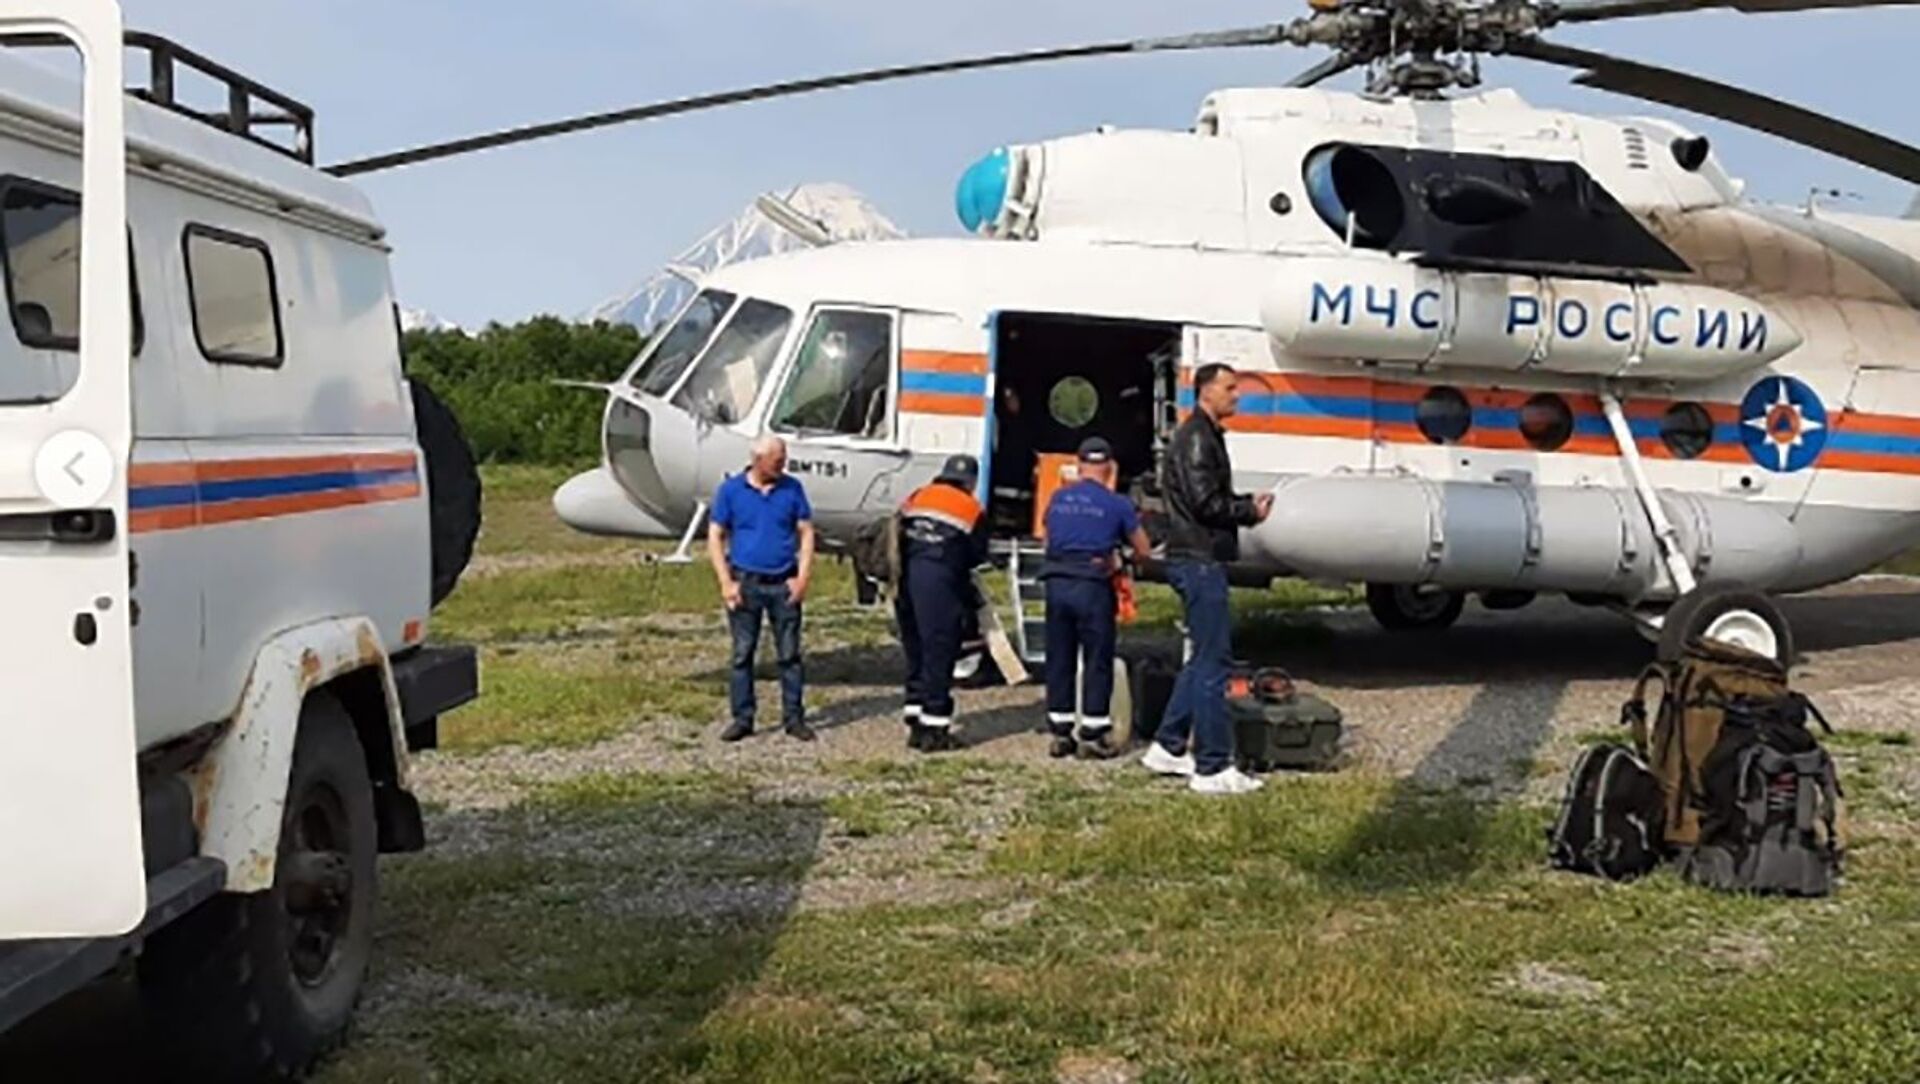 Сотрудники спасательной службы МЧС РФ, доставленные на вертолёте Ми-8МТВ-1 на поиски самолёта Ан-26 - Sputnik Казахстан, 1920, 07.07.2021